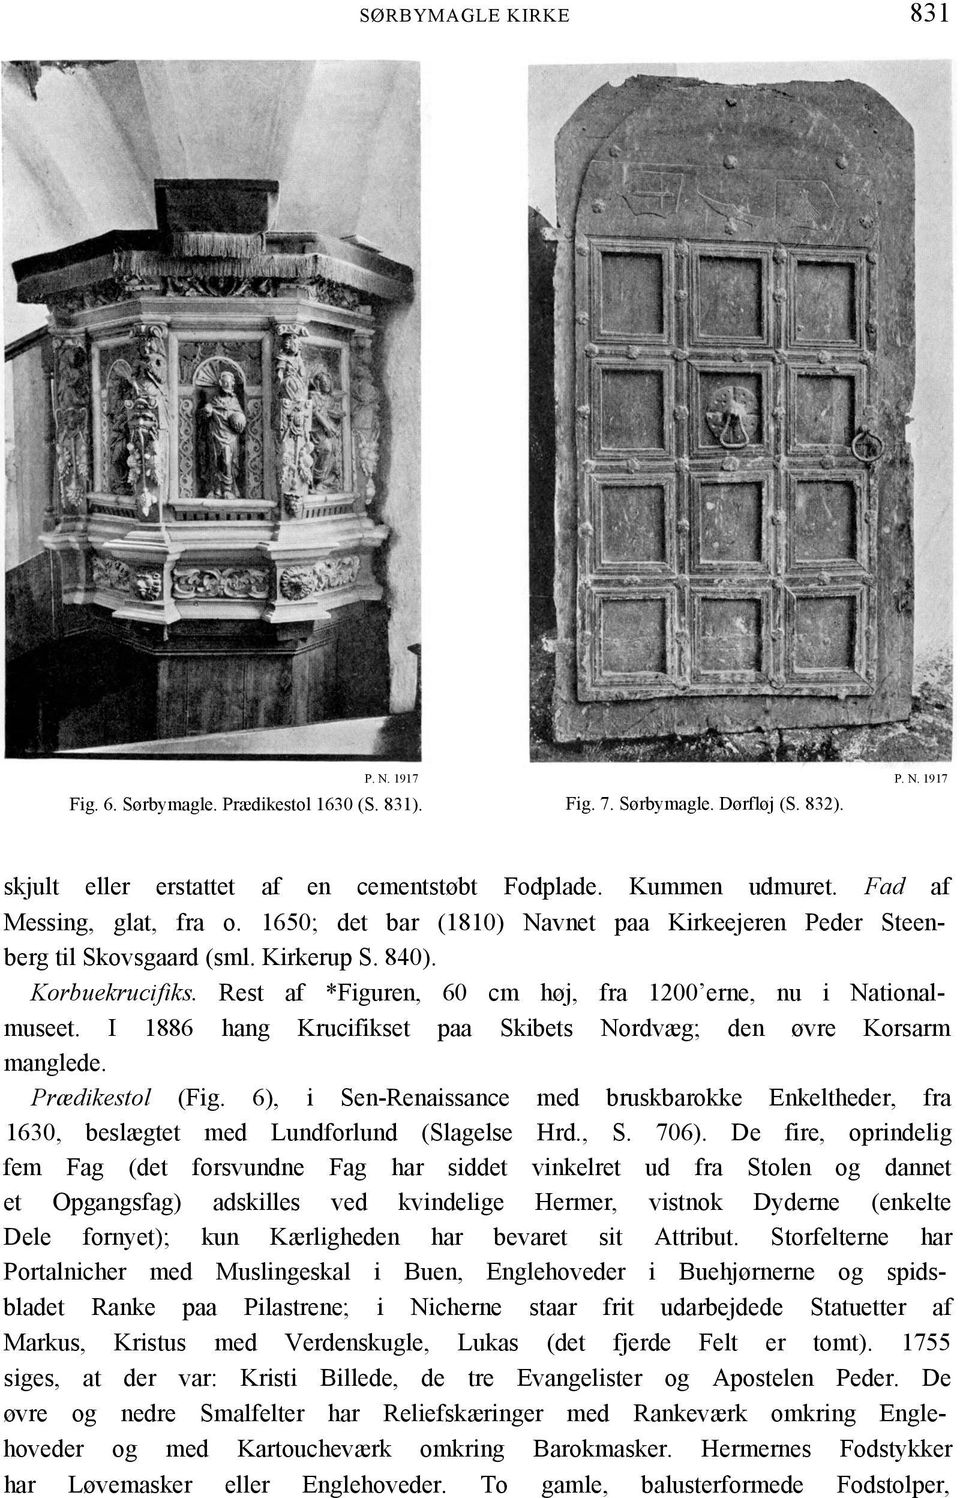 Rest af *Figuren, 60 cm høj, fra 1200 erne, nu i Nationalmuseet. I 1886 hang Krucifikset paa Skibets Nordvæg; den øvre Korsarm manglede. Prædikestol (Fig.